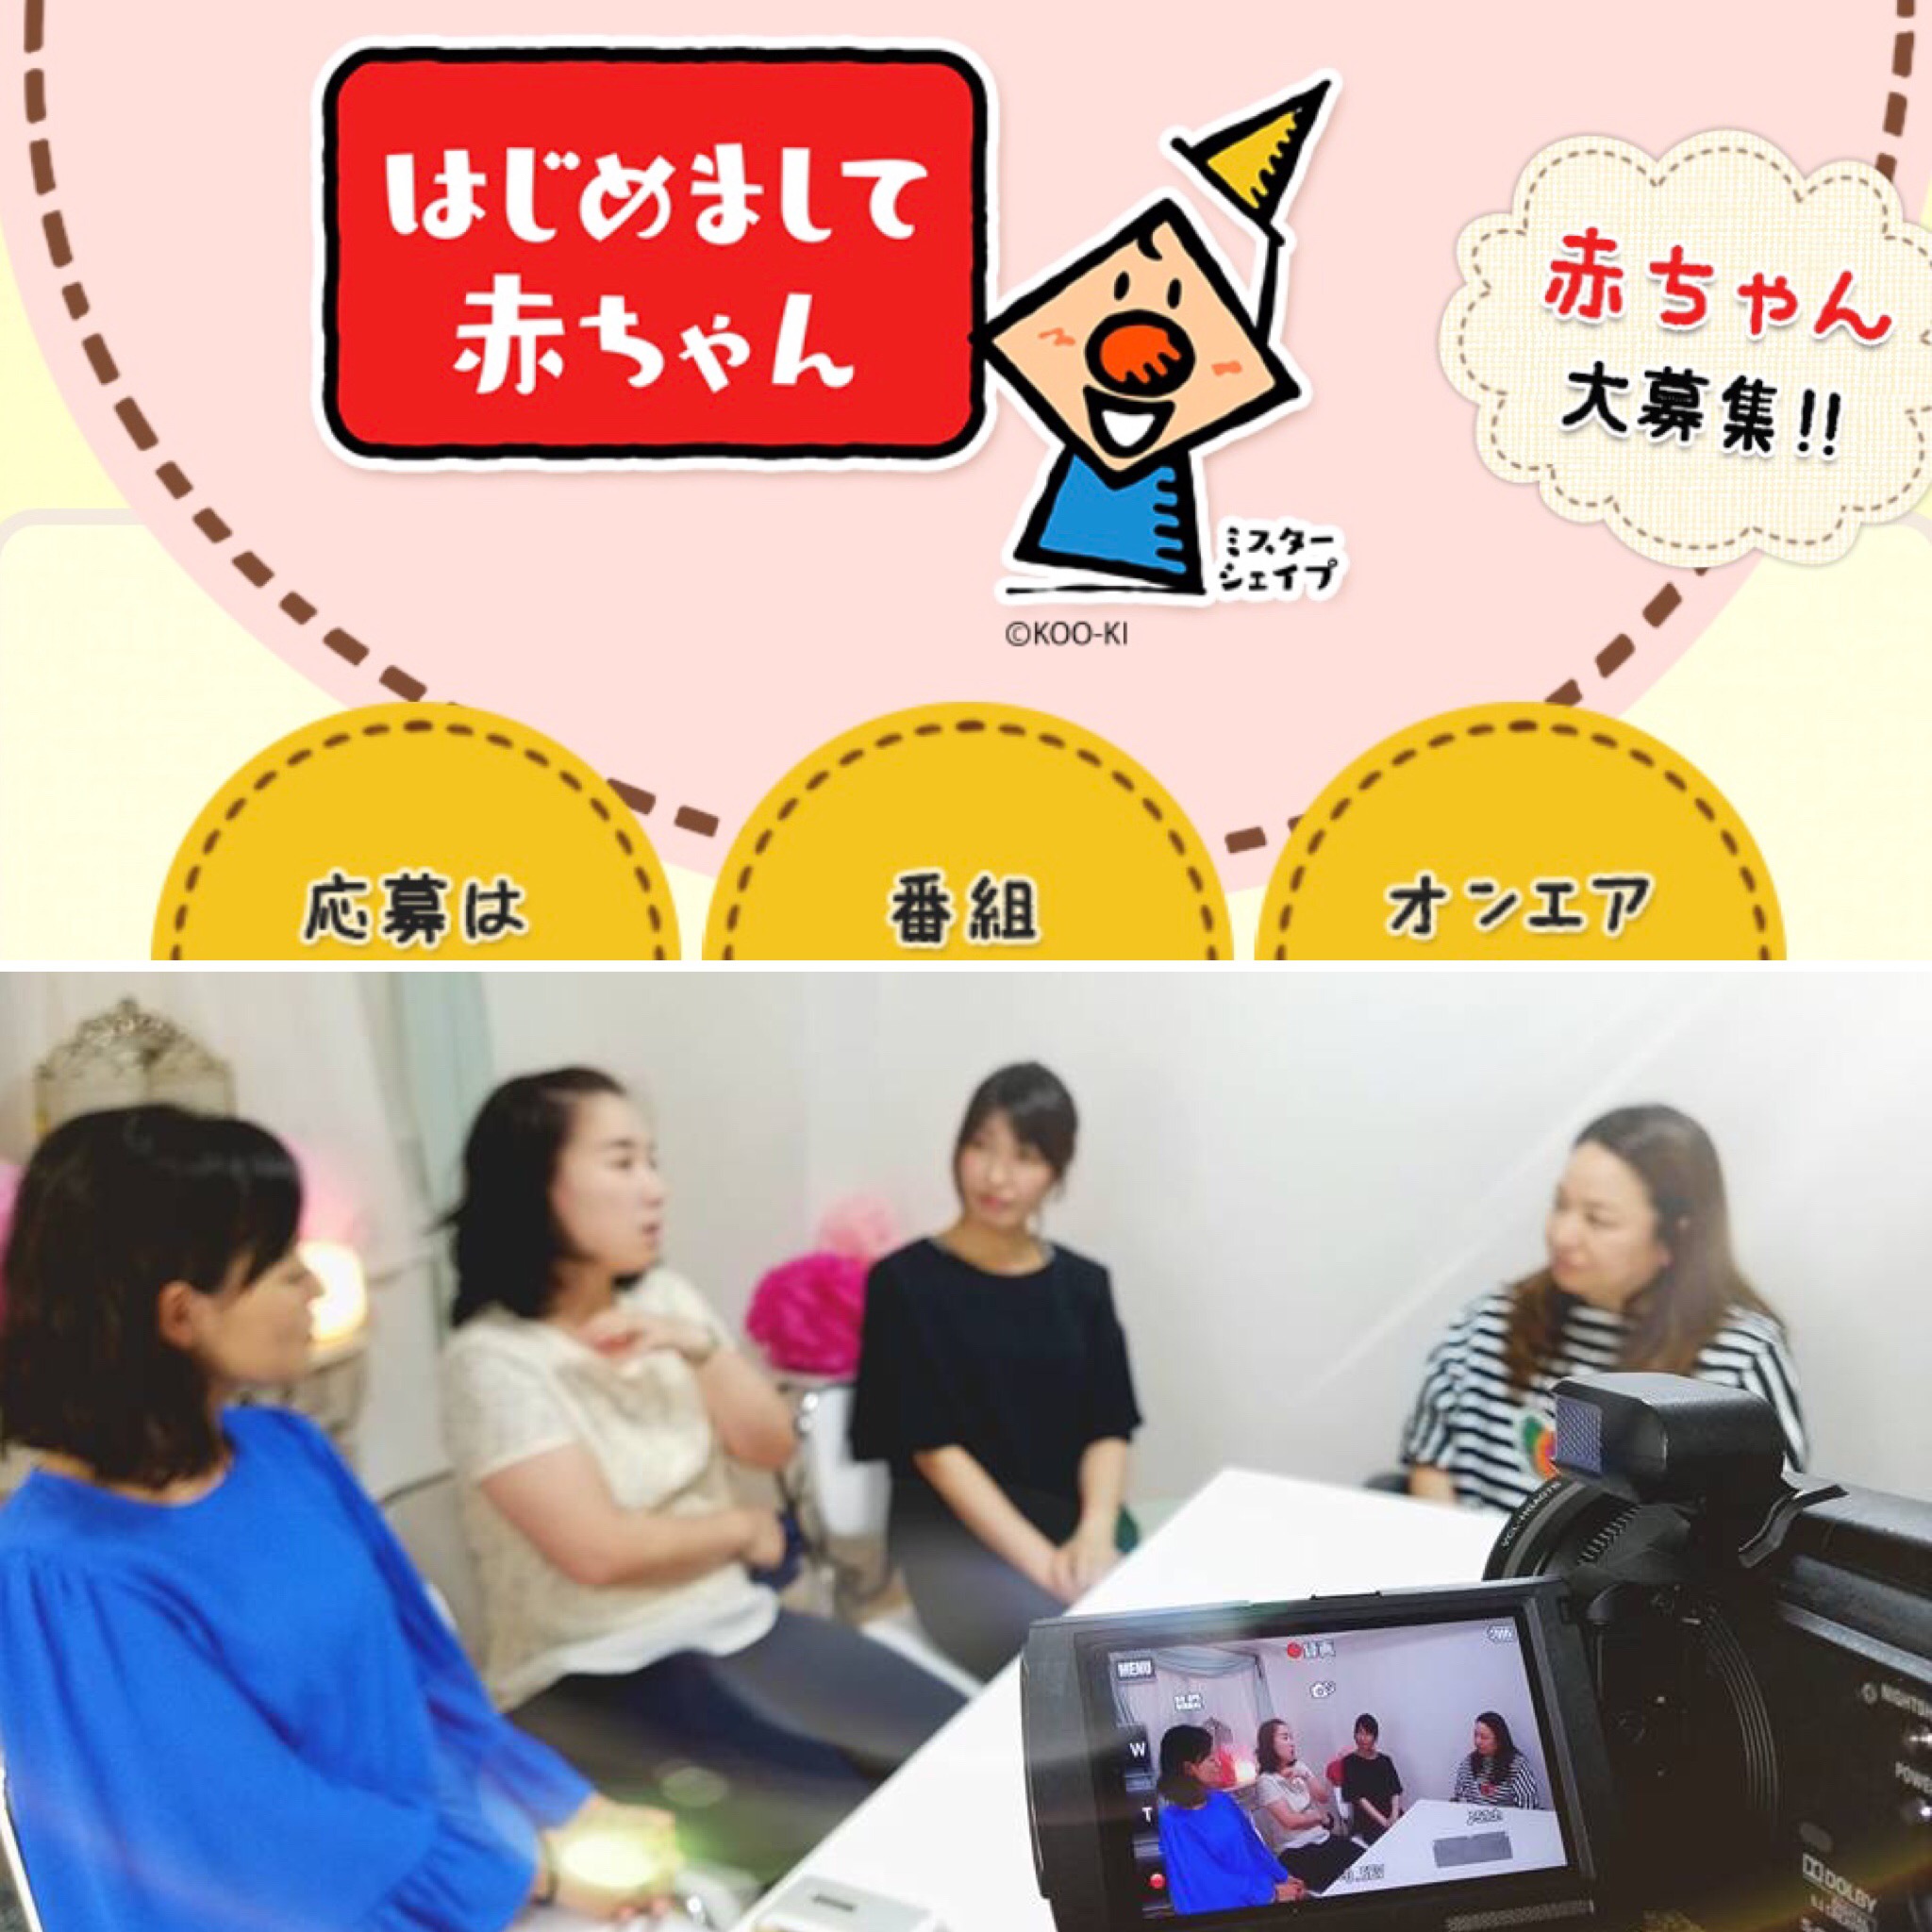 はじめまして赤ちゃん制作の裏話 福岡の動画制作会社 Triple トリプル